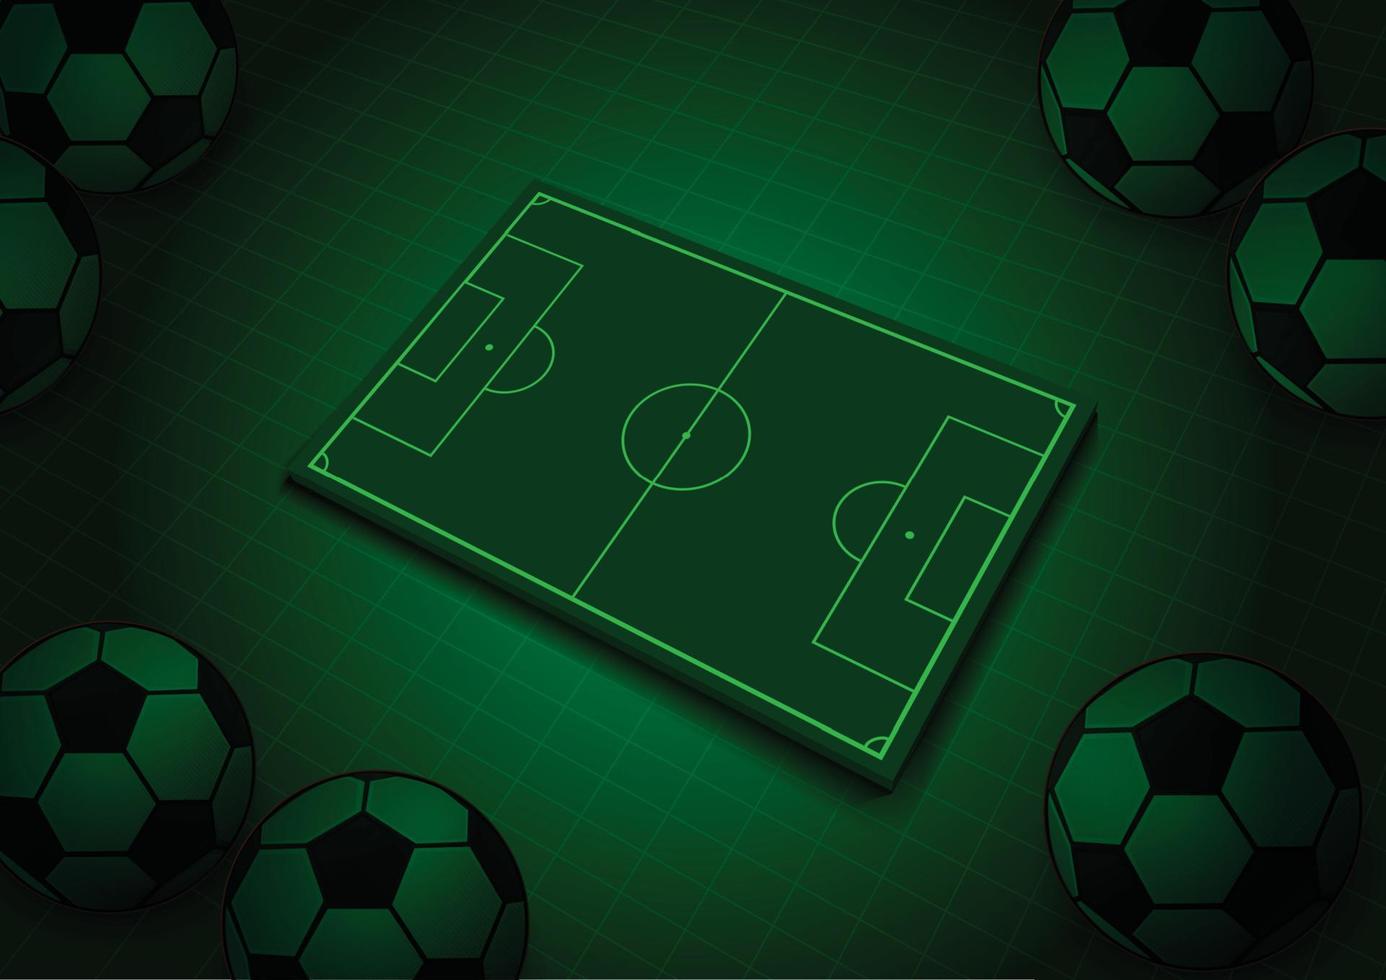 campo de fútbol 3d verde con balón de fútbol ilustración 3d vector